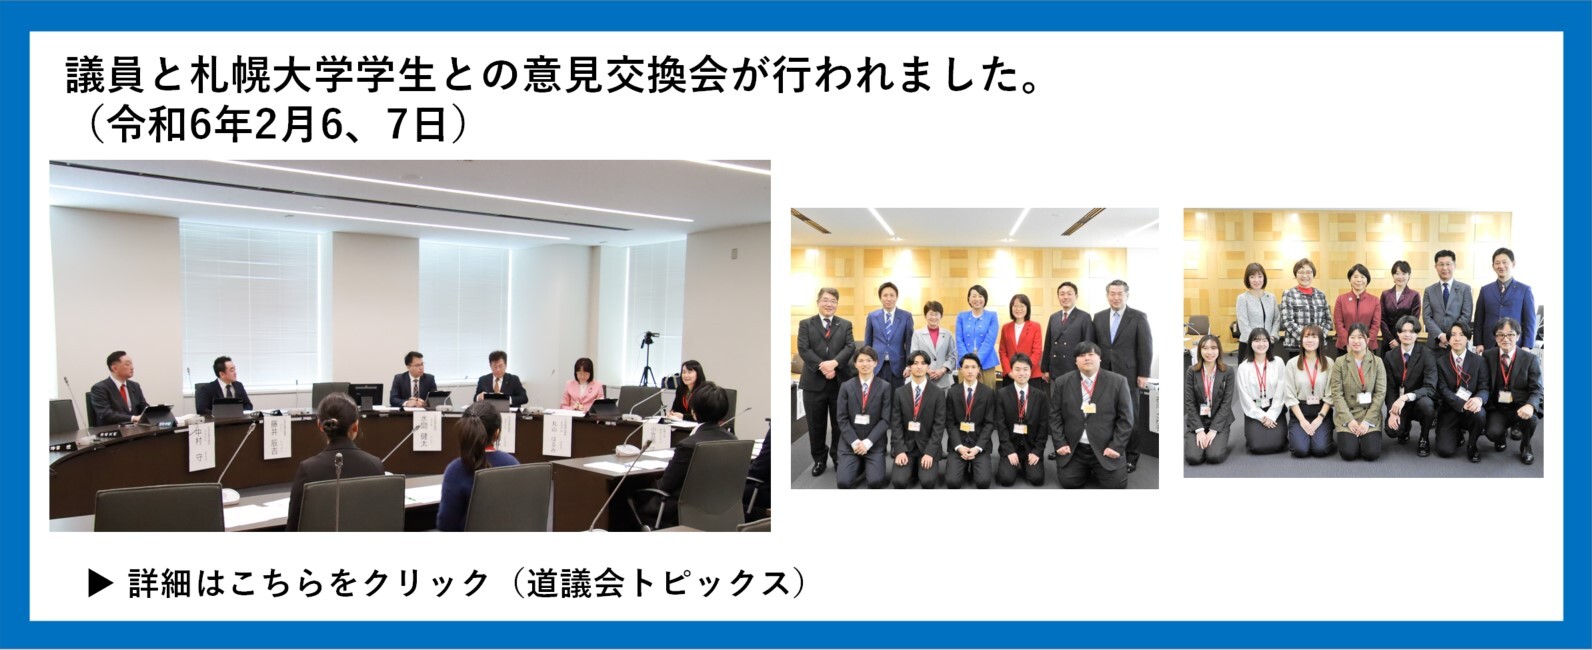 議員と札幌大学学生との意見交換会が行われました。